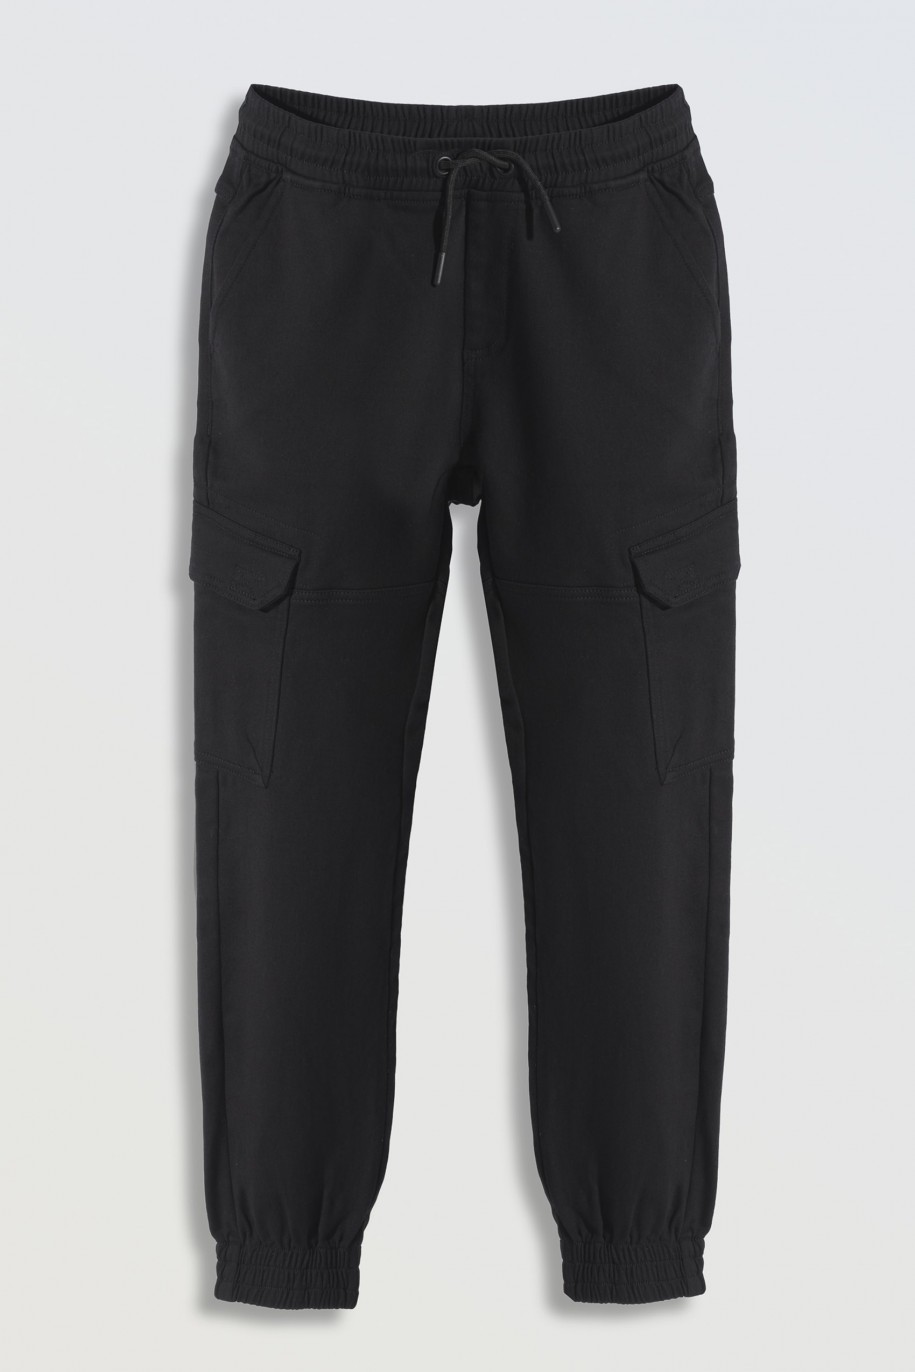 Czarne spodnie typu bojówki z przestrzennymi kieszeniami - 46246